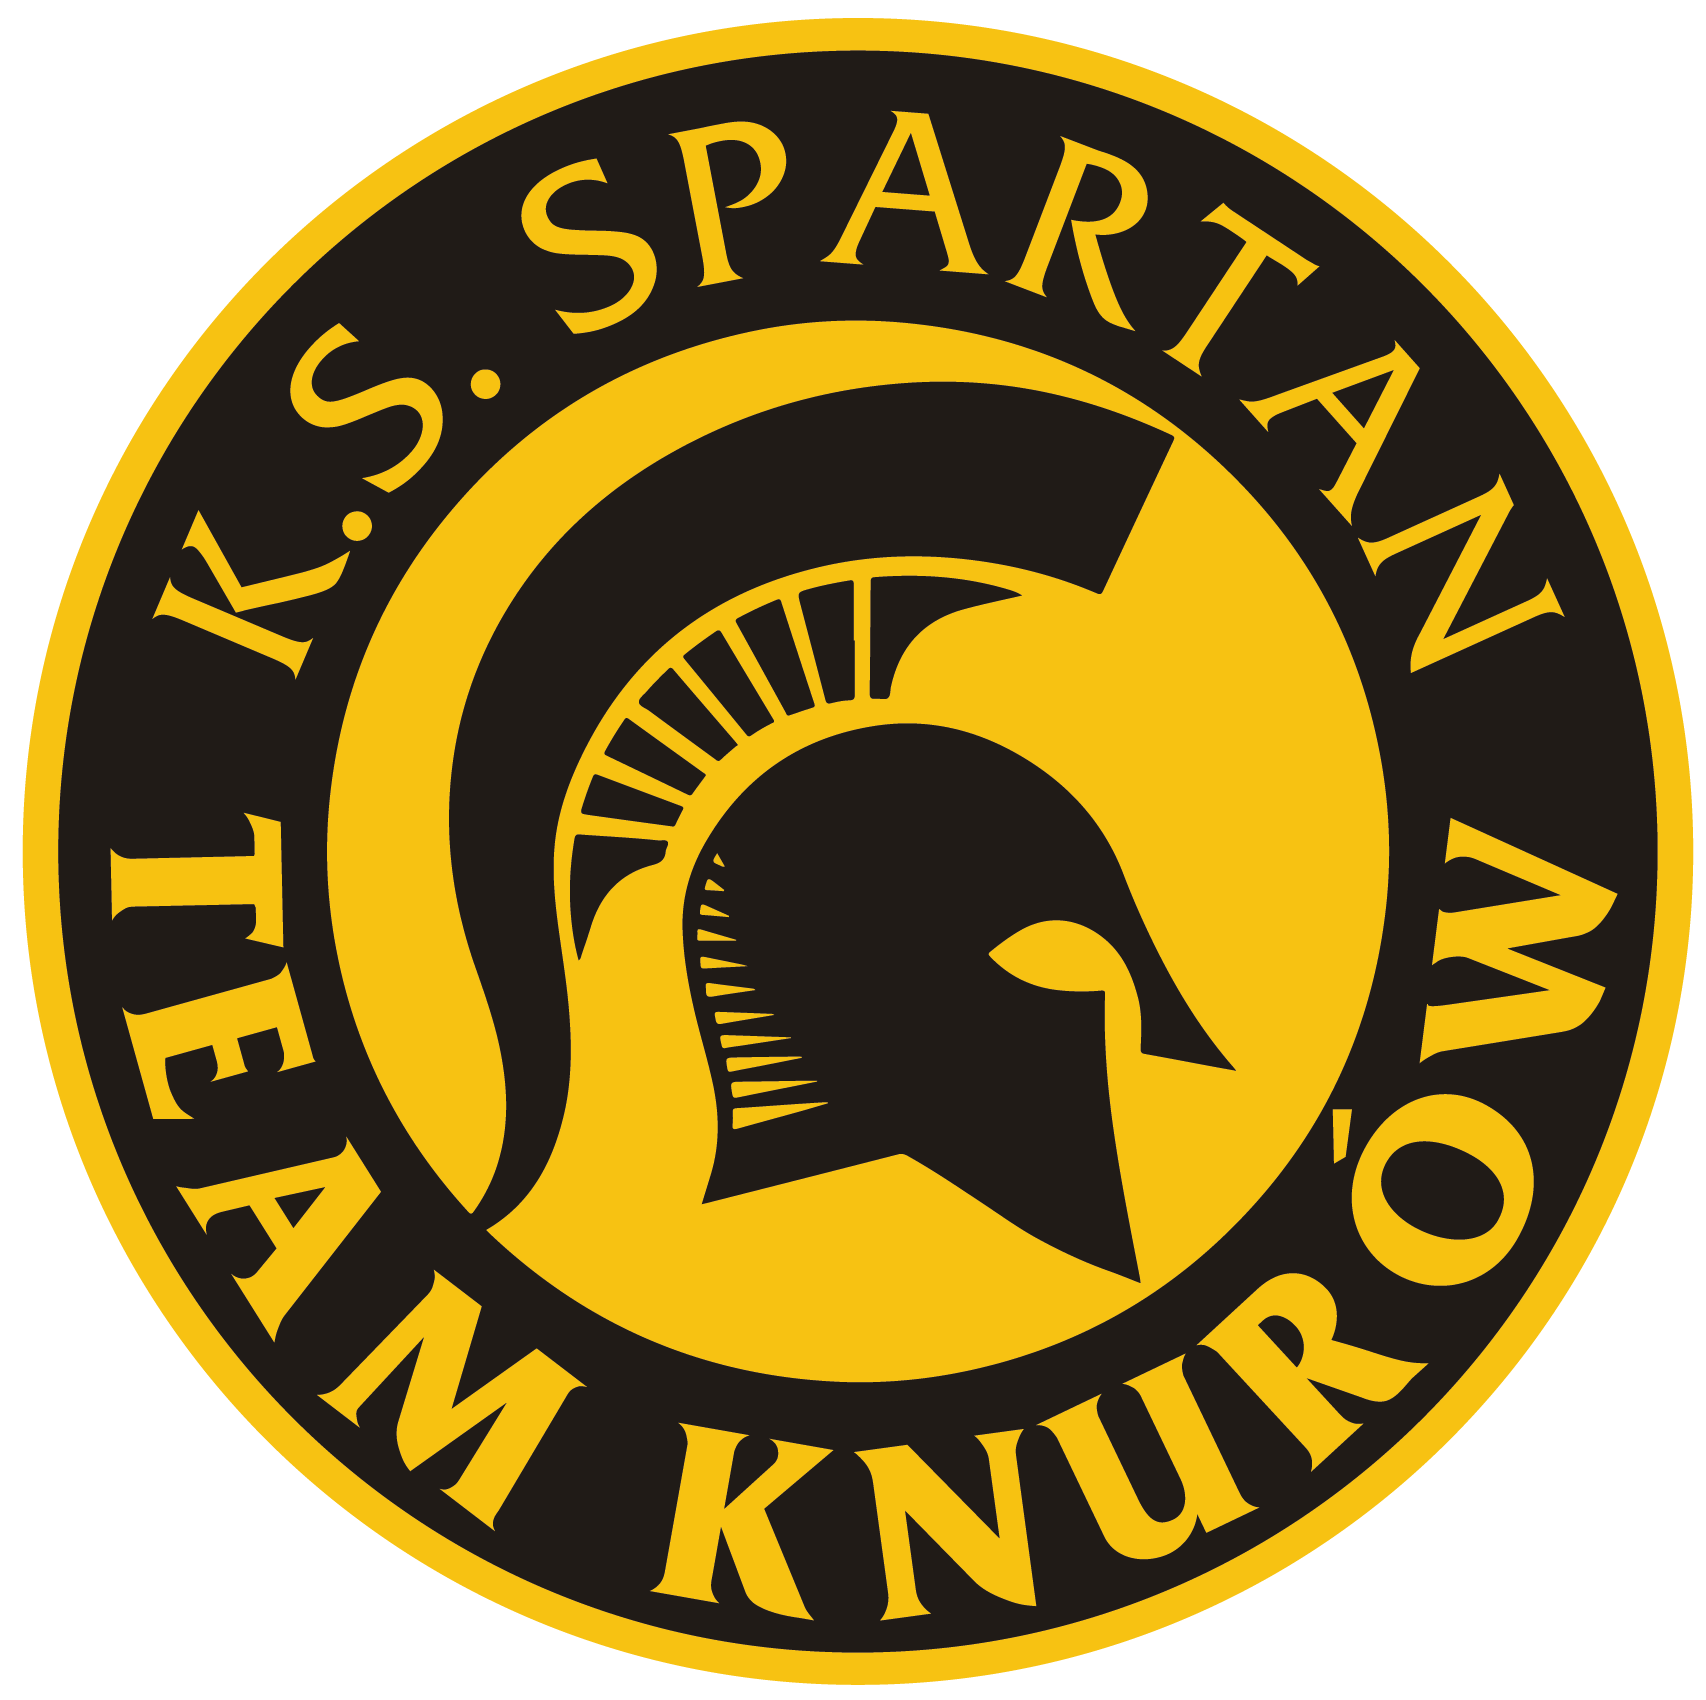 Spartan Knur贸w